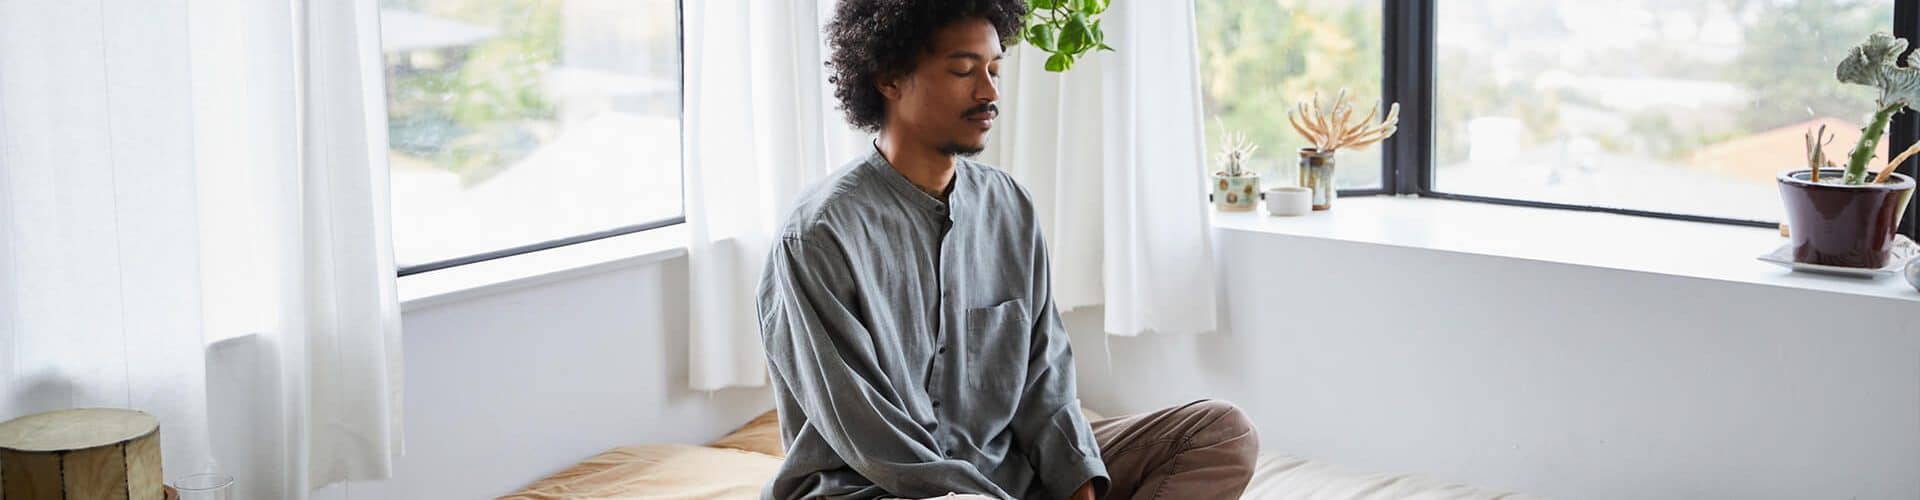 jovem praticando meditação como uma das técnicas de relaxamento